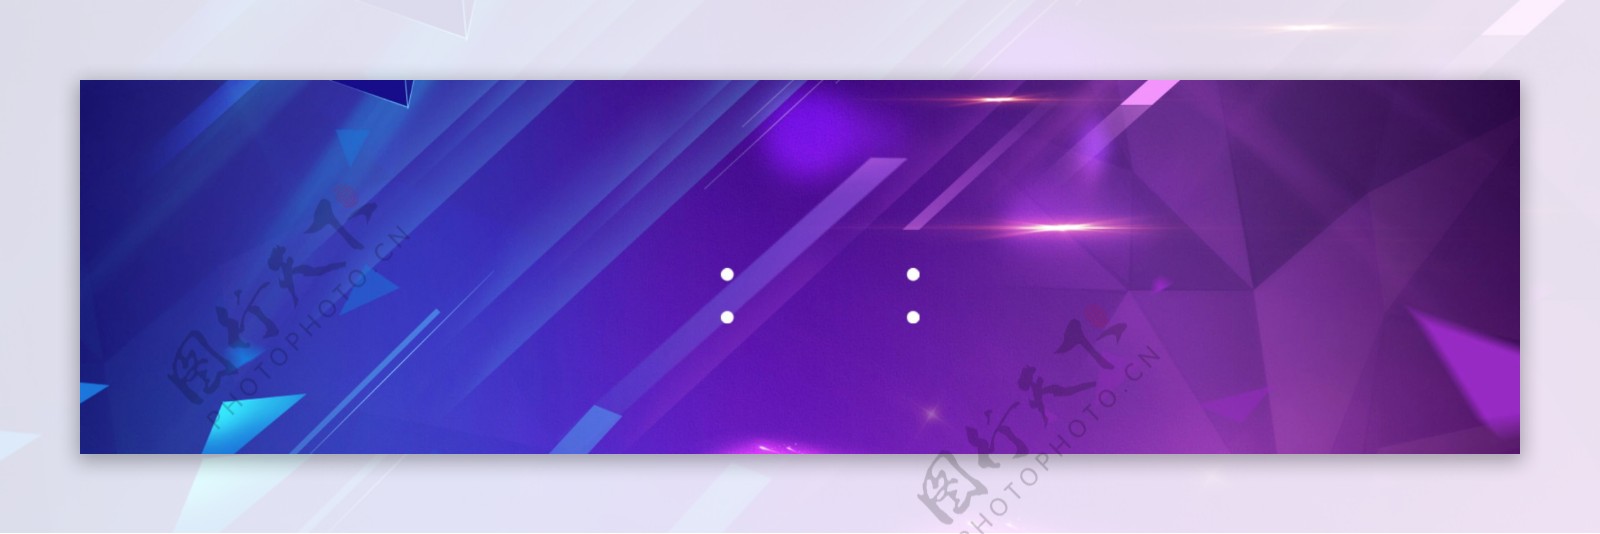 唯美紫色方块banner背景素材